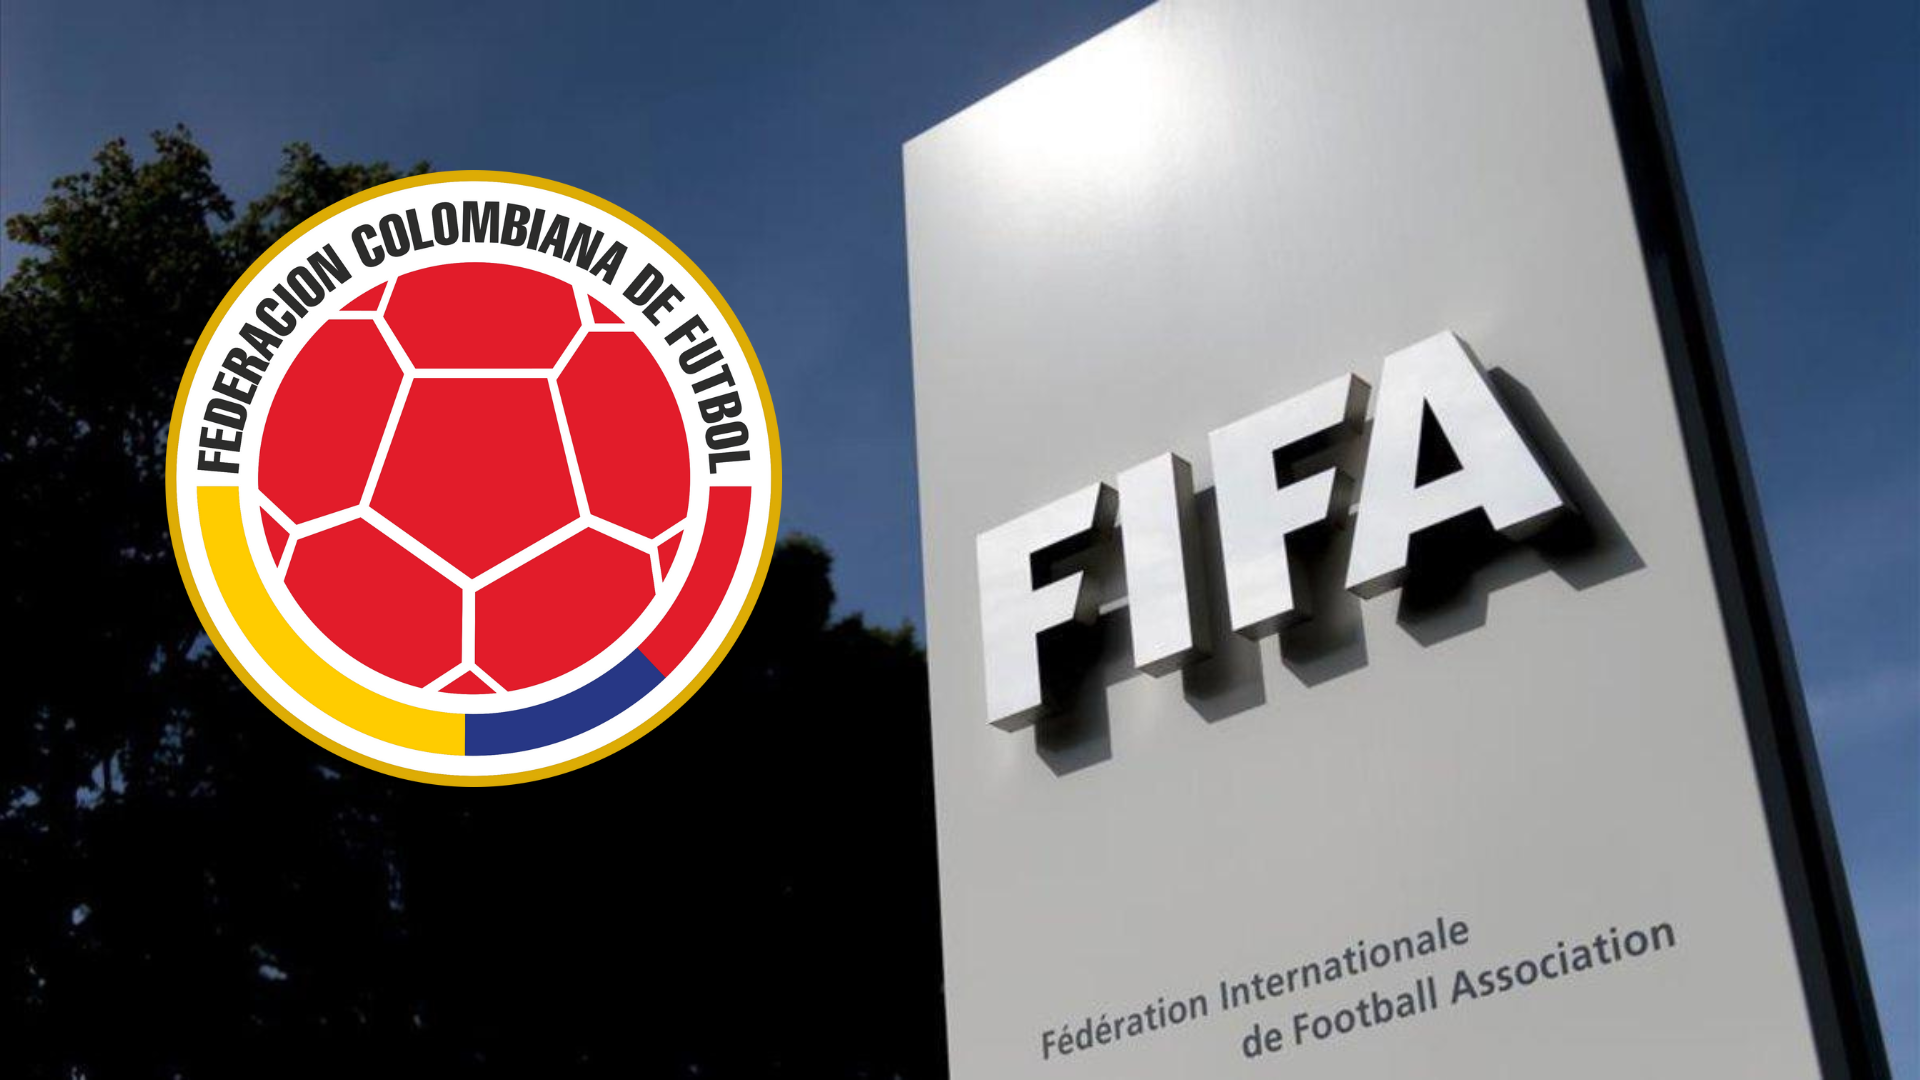 La FIFA le entregará a la Federación Colombiana de Fútbol 8 millones de dólares: cuál es la razón